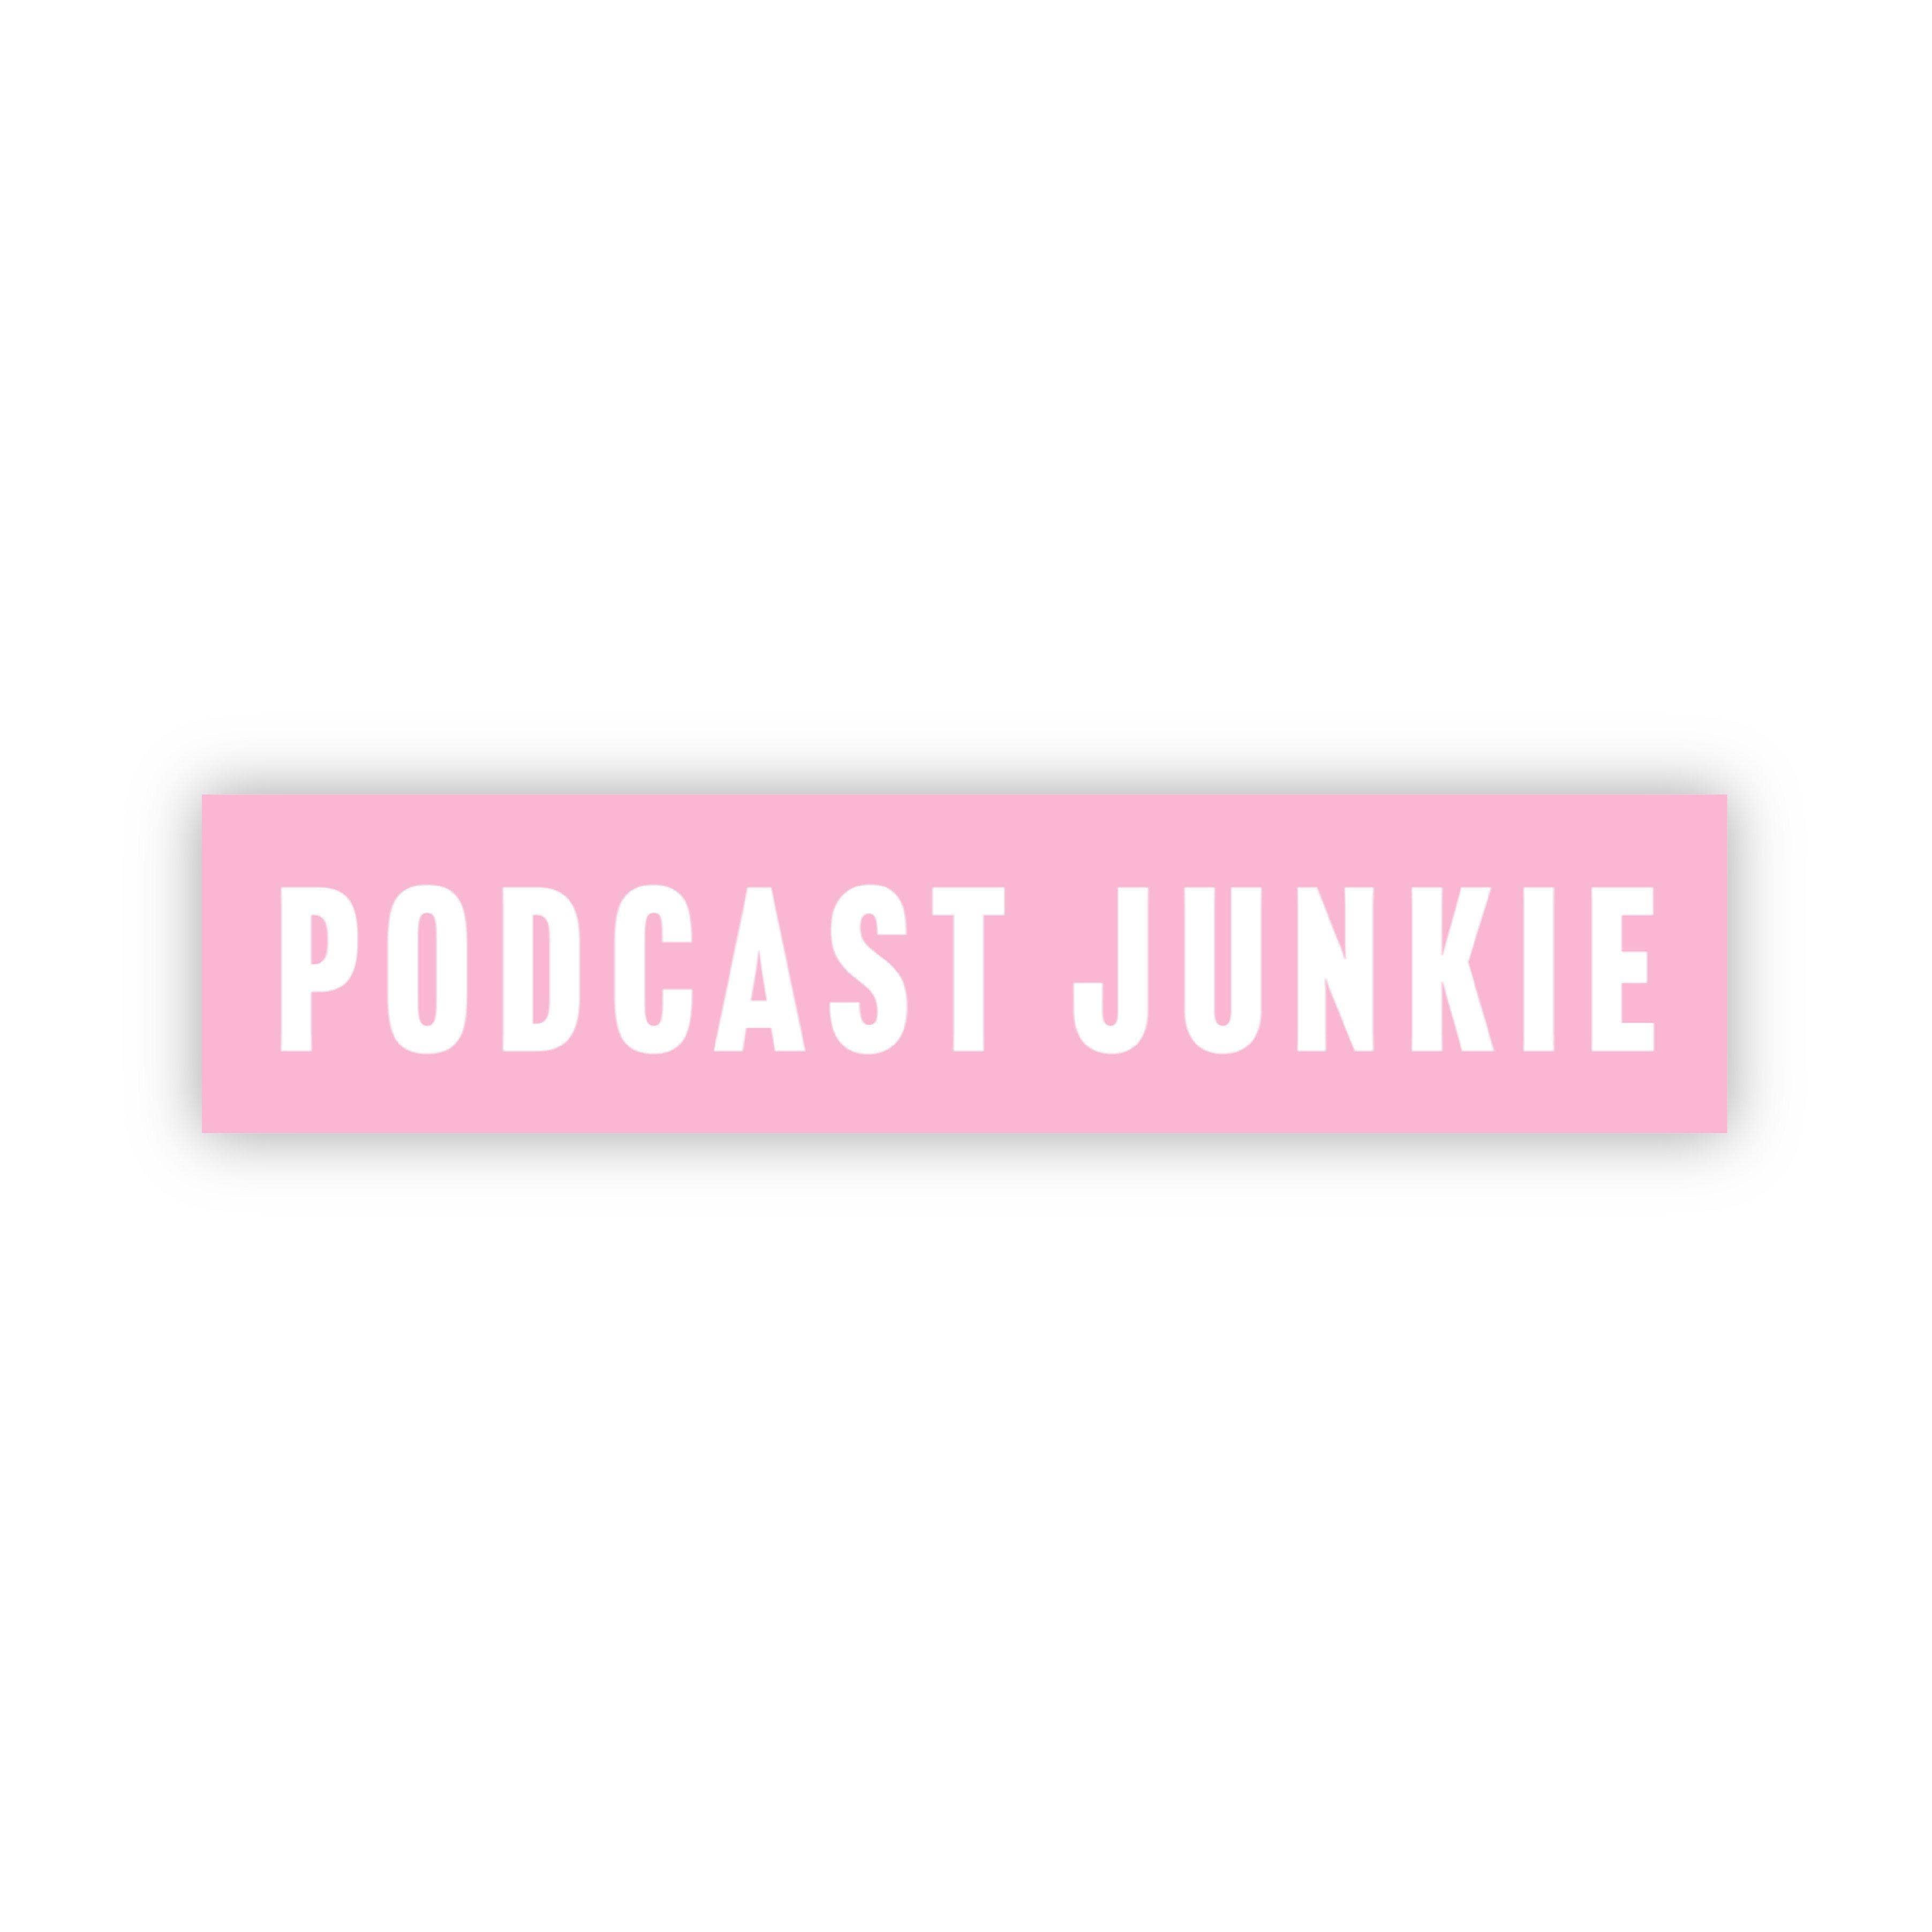 Podcast Junkie Pink Sticker